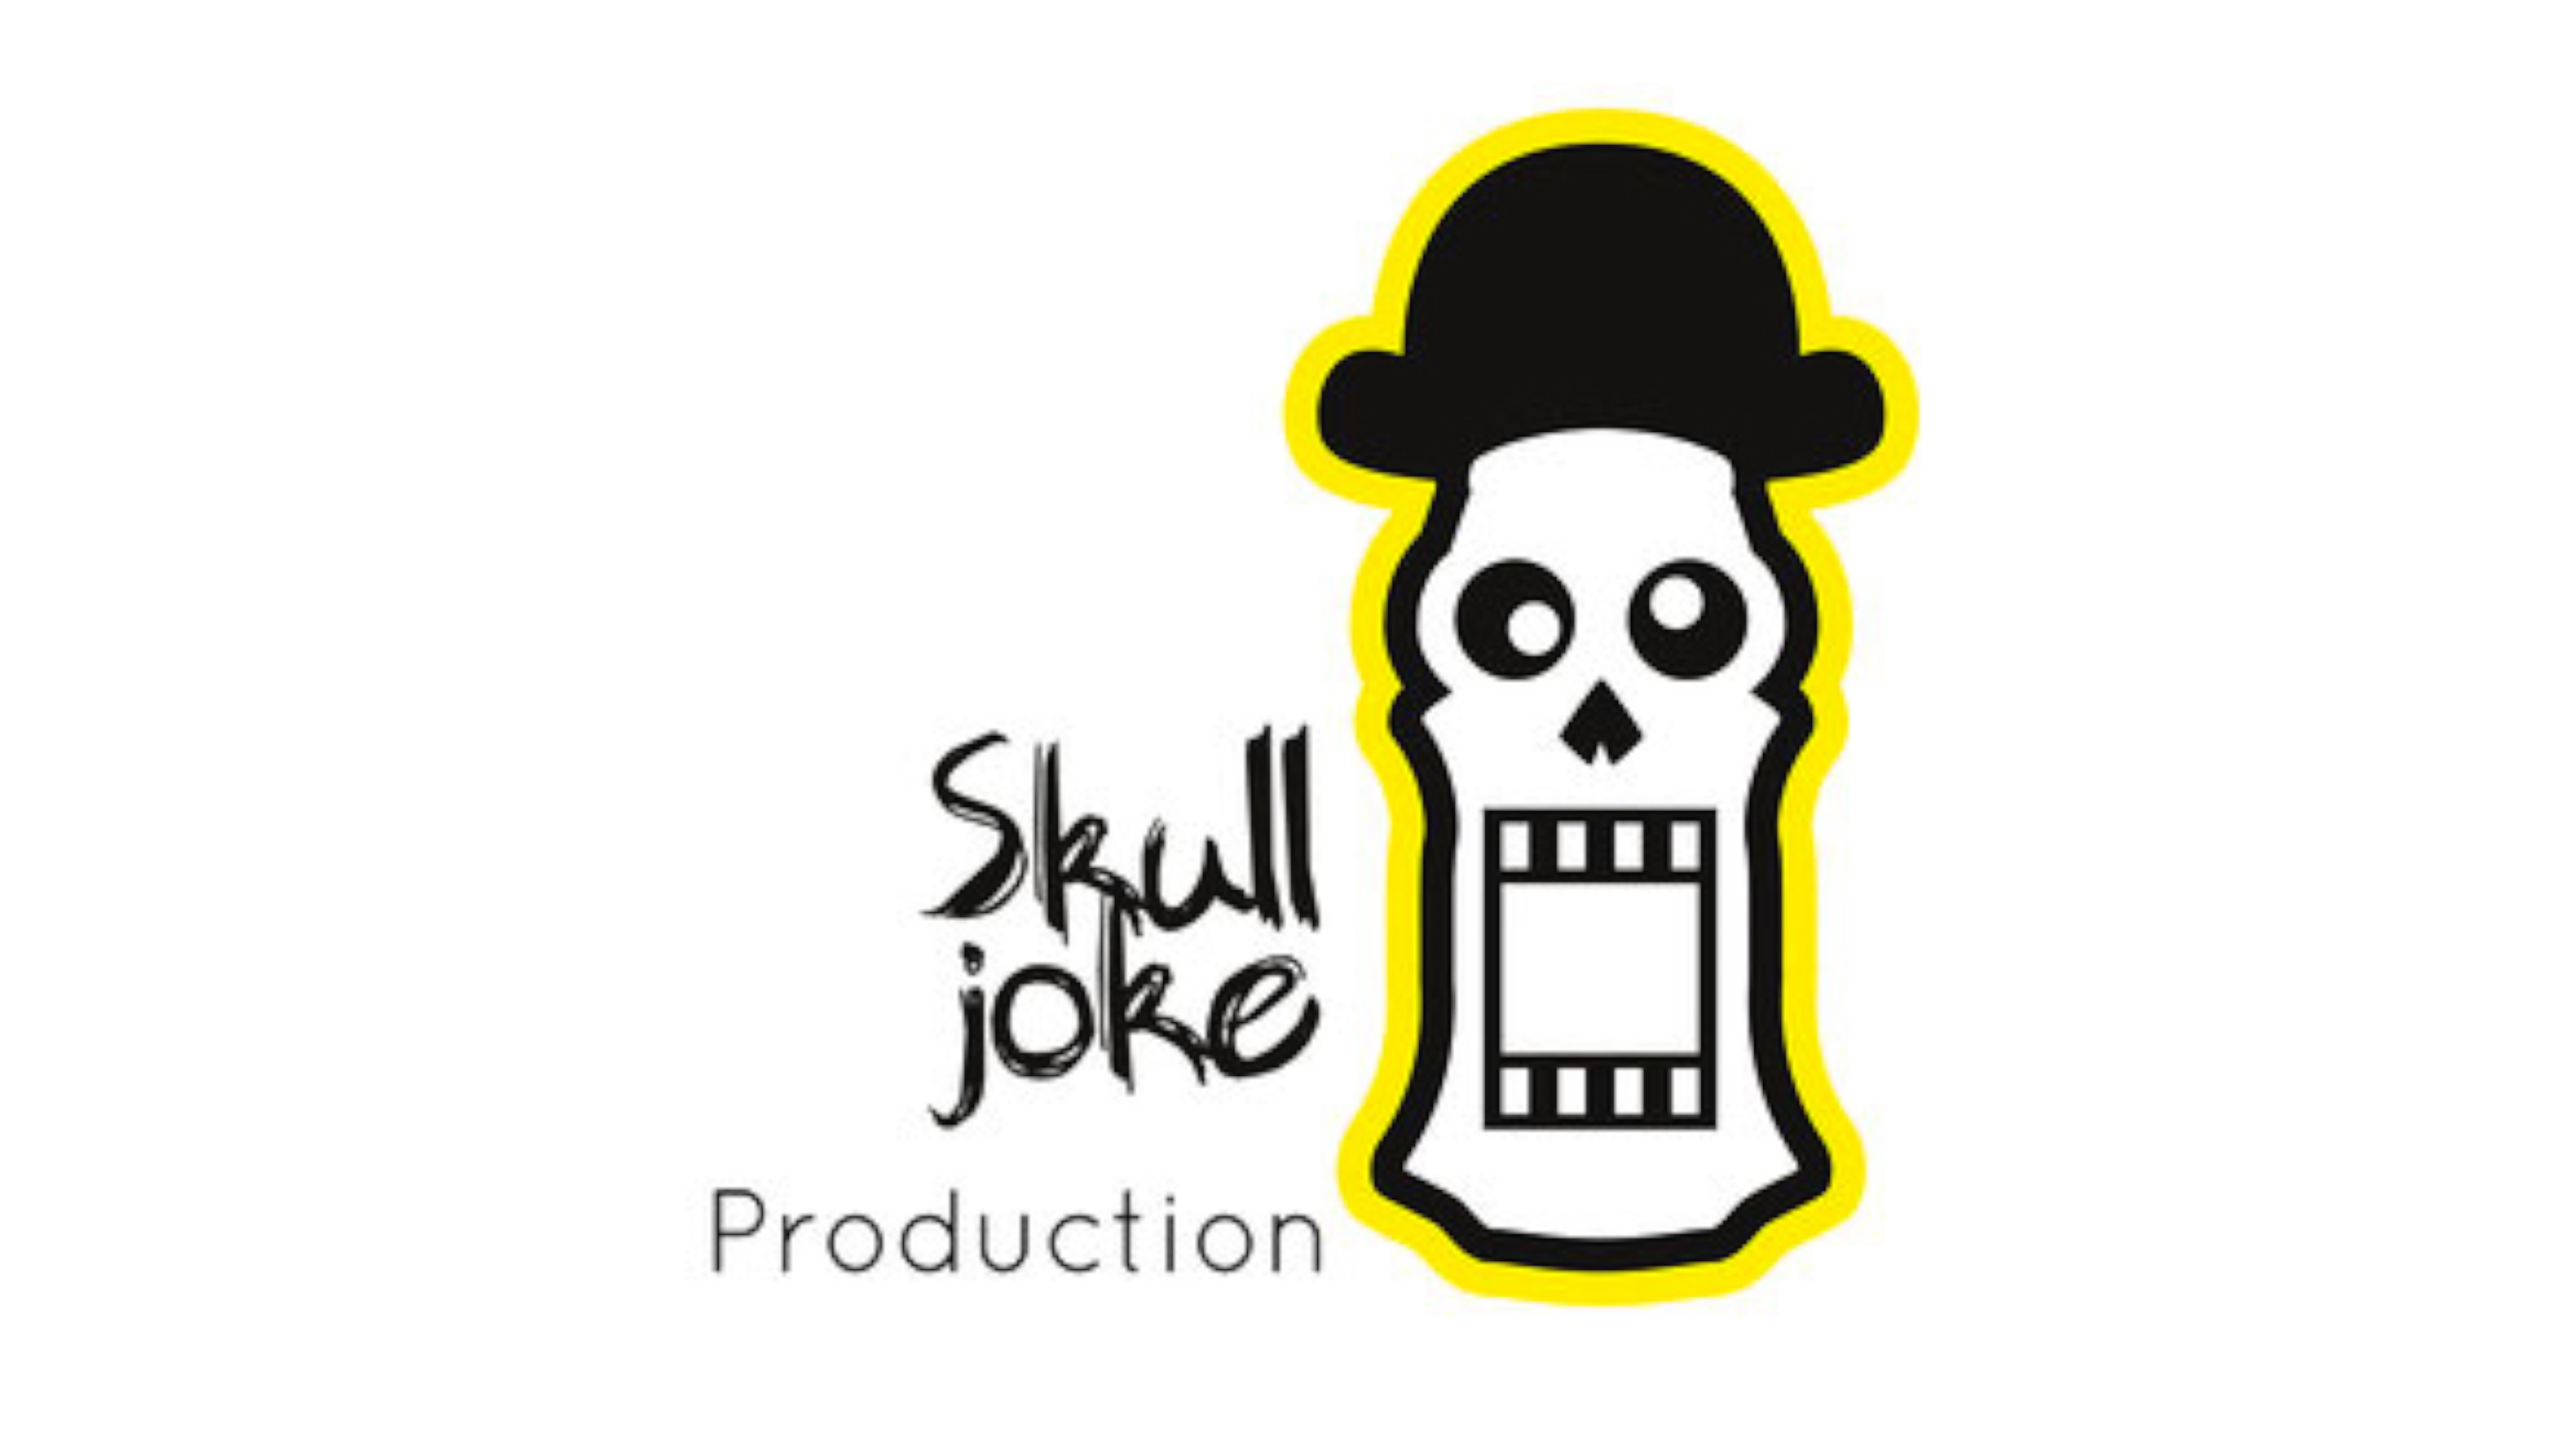 Skull Joke Production